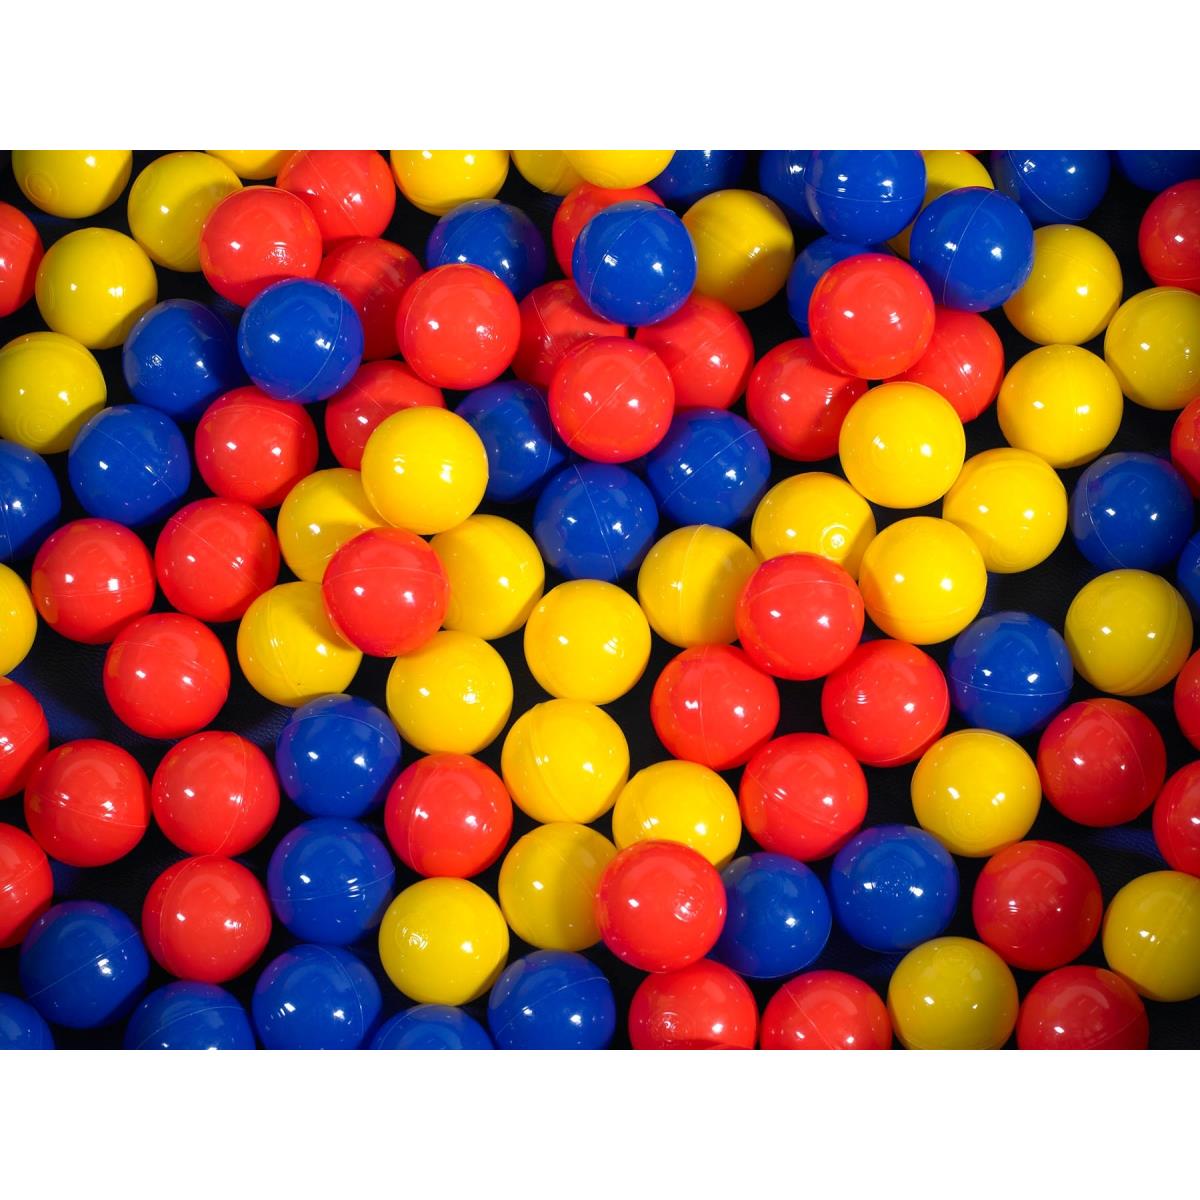 Cf331-531 175 Mixed Color Balls